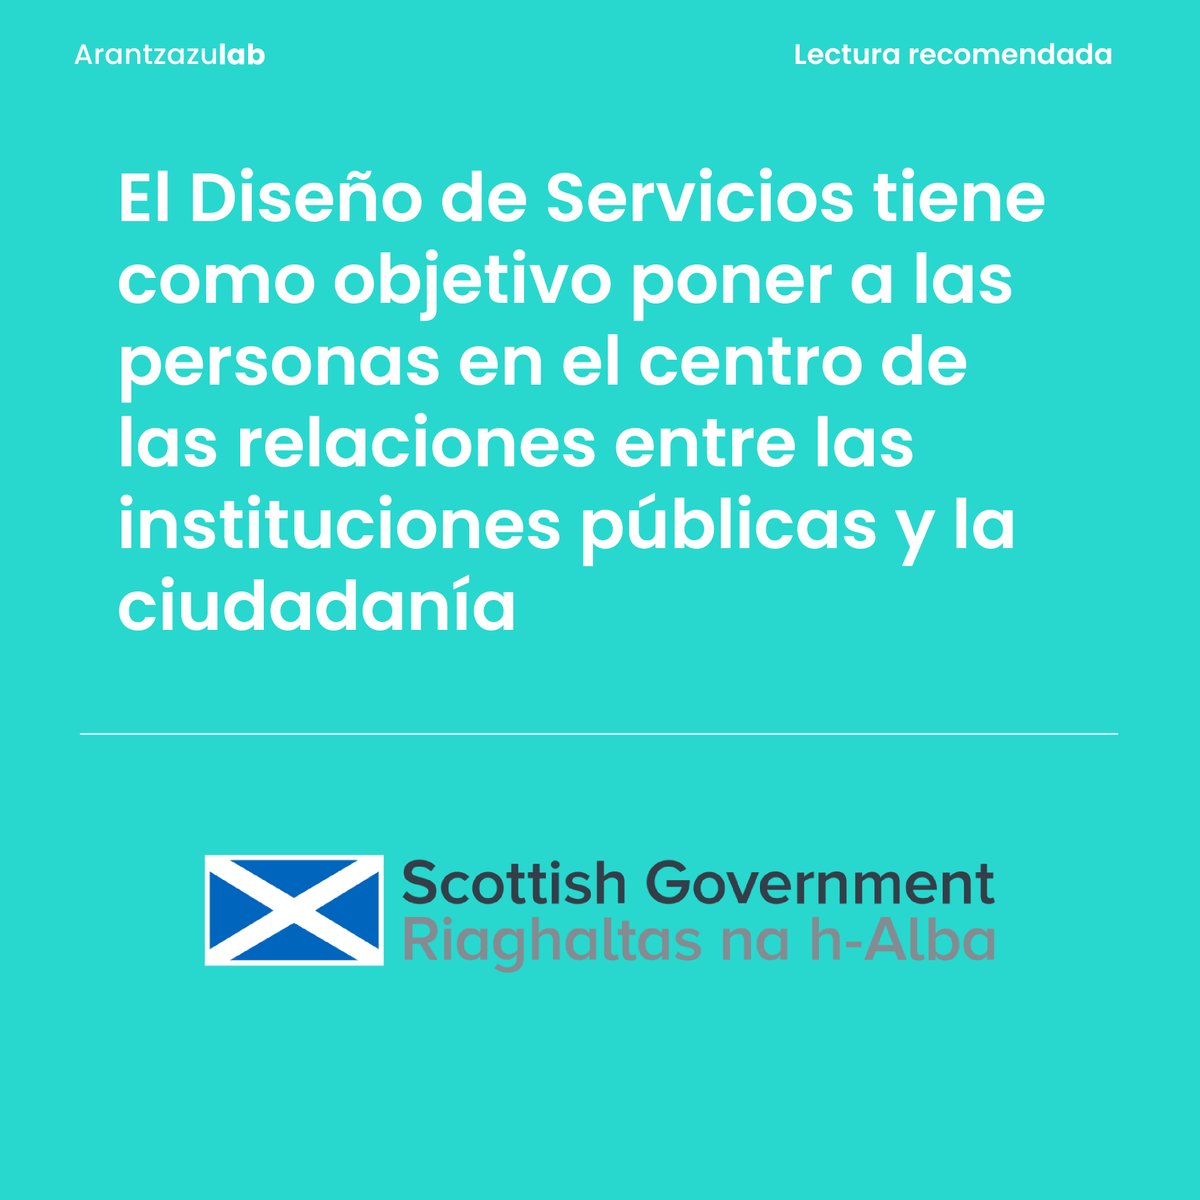 📚El Diseño de Servicios tiene como objetivo poner a las personas en el centro de las relaciones entre las instituciones públicas y la ciudadanía. En Escocia llevan años llevándolo a la práctica y es un ejemplo a explorar: 🔗labur.eus/C6QUz #LecturaRecomendada